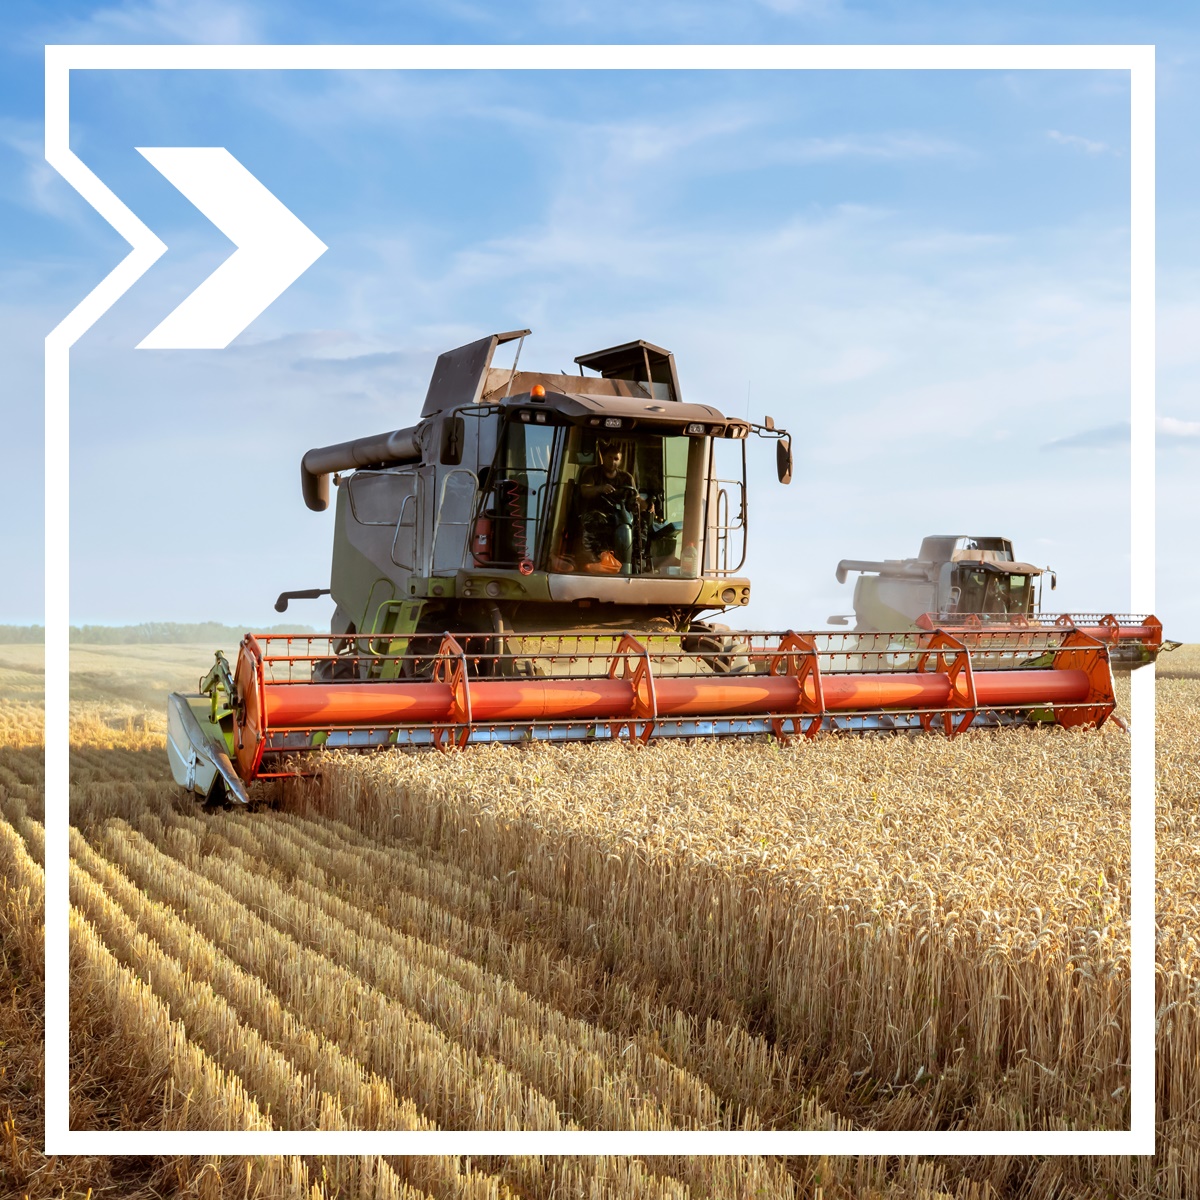 A tractor plows through a wheat field